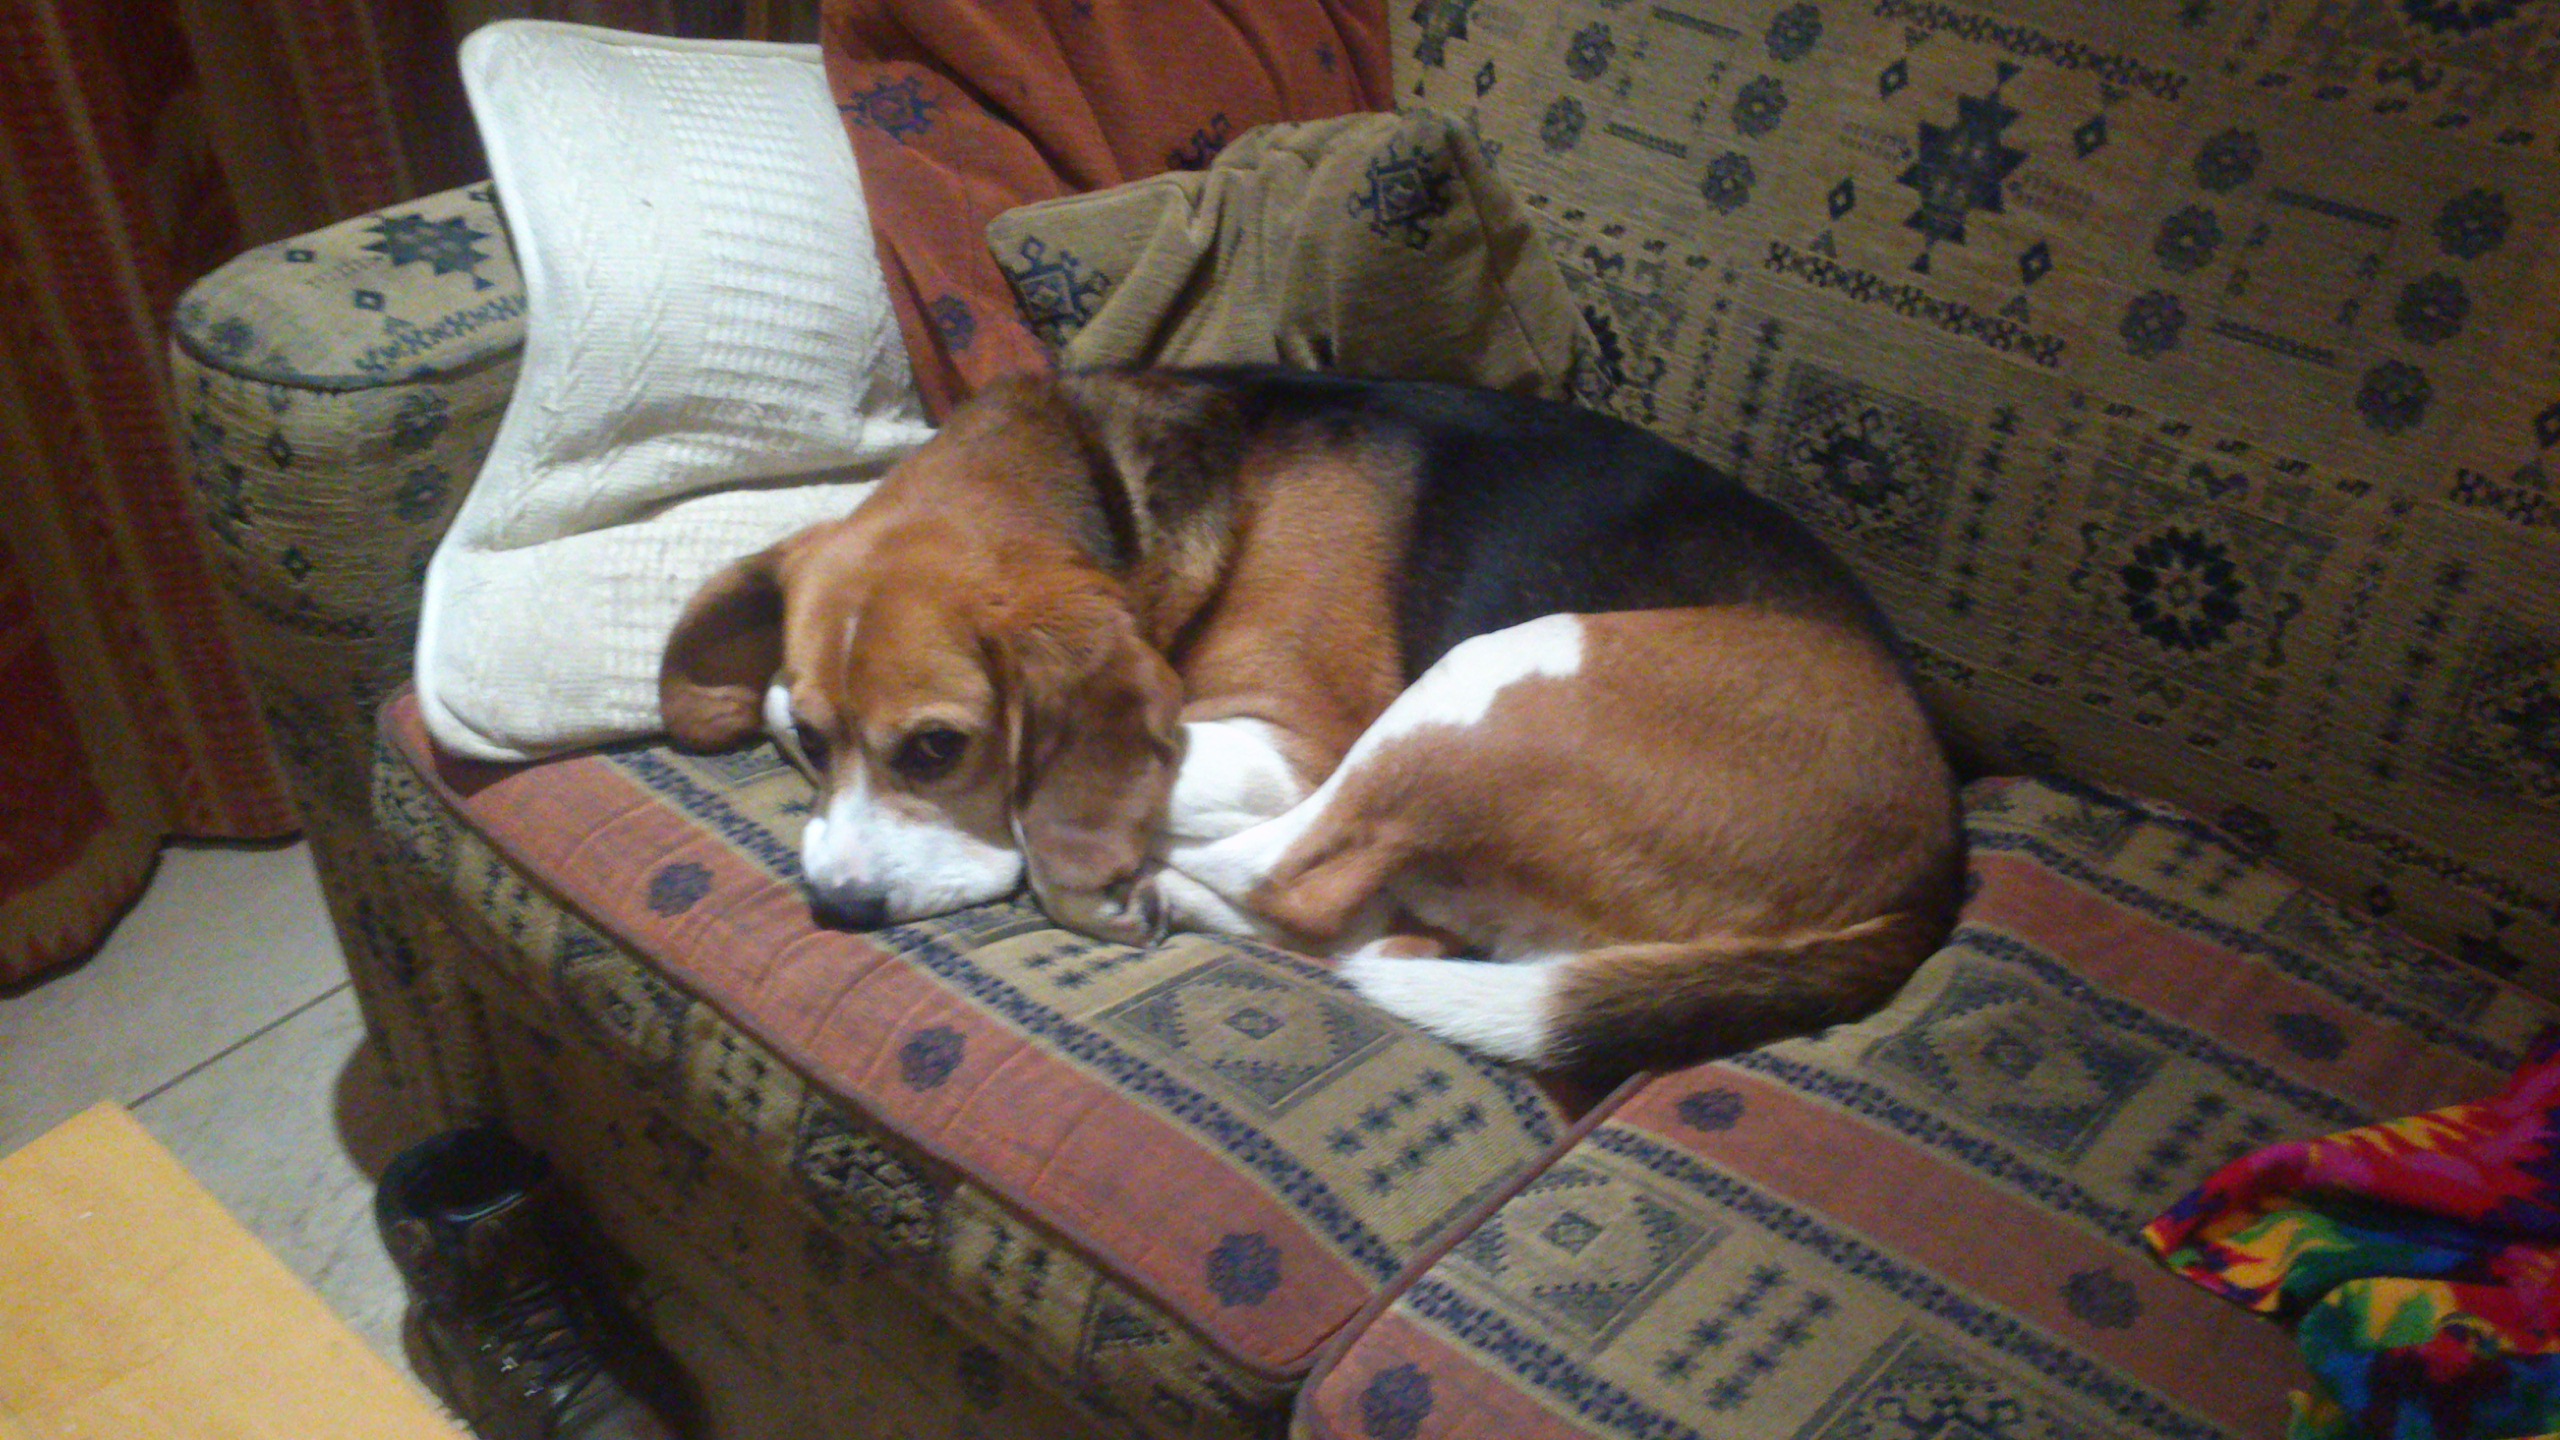 7 year old beagle